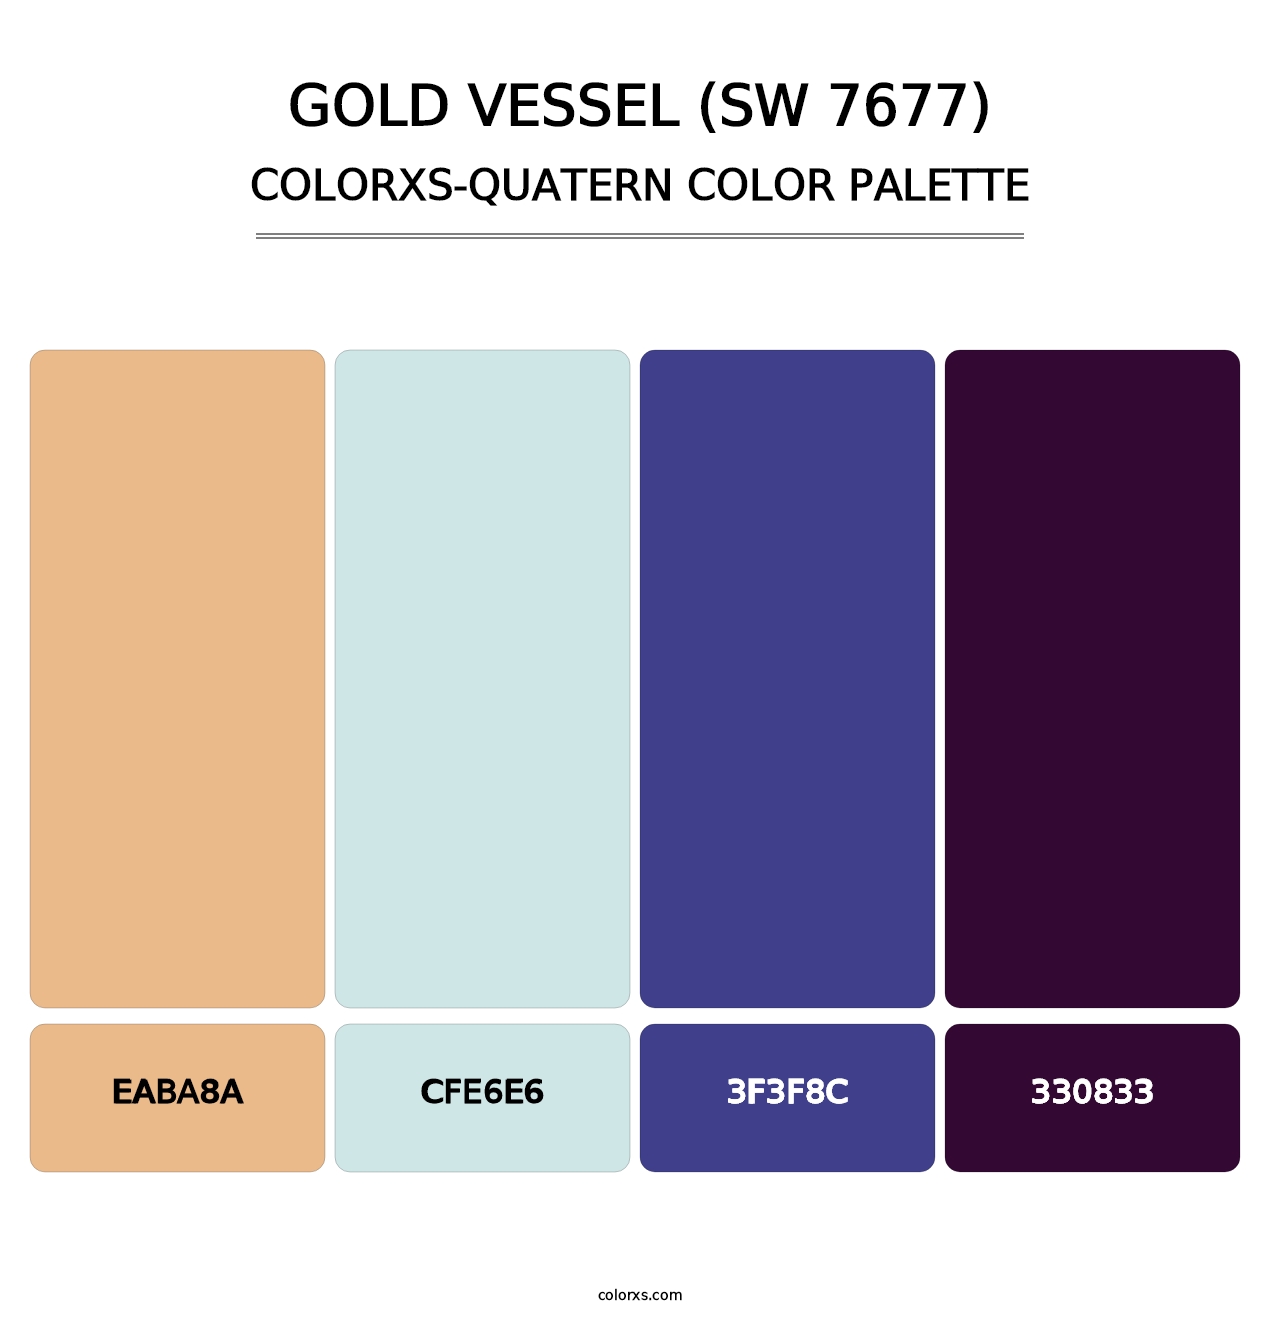 Gold Vessel (SW 7677) - Colorxs Quatern Palette